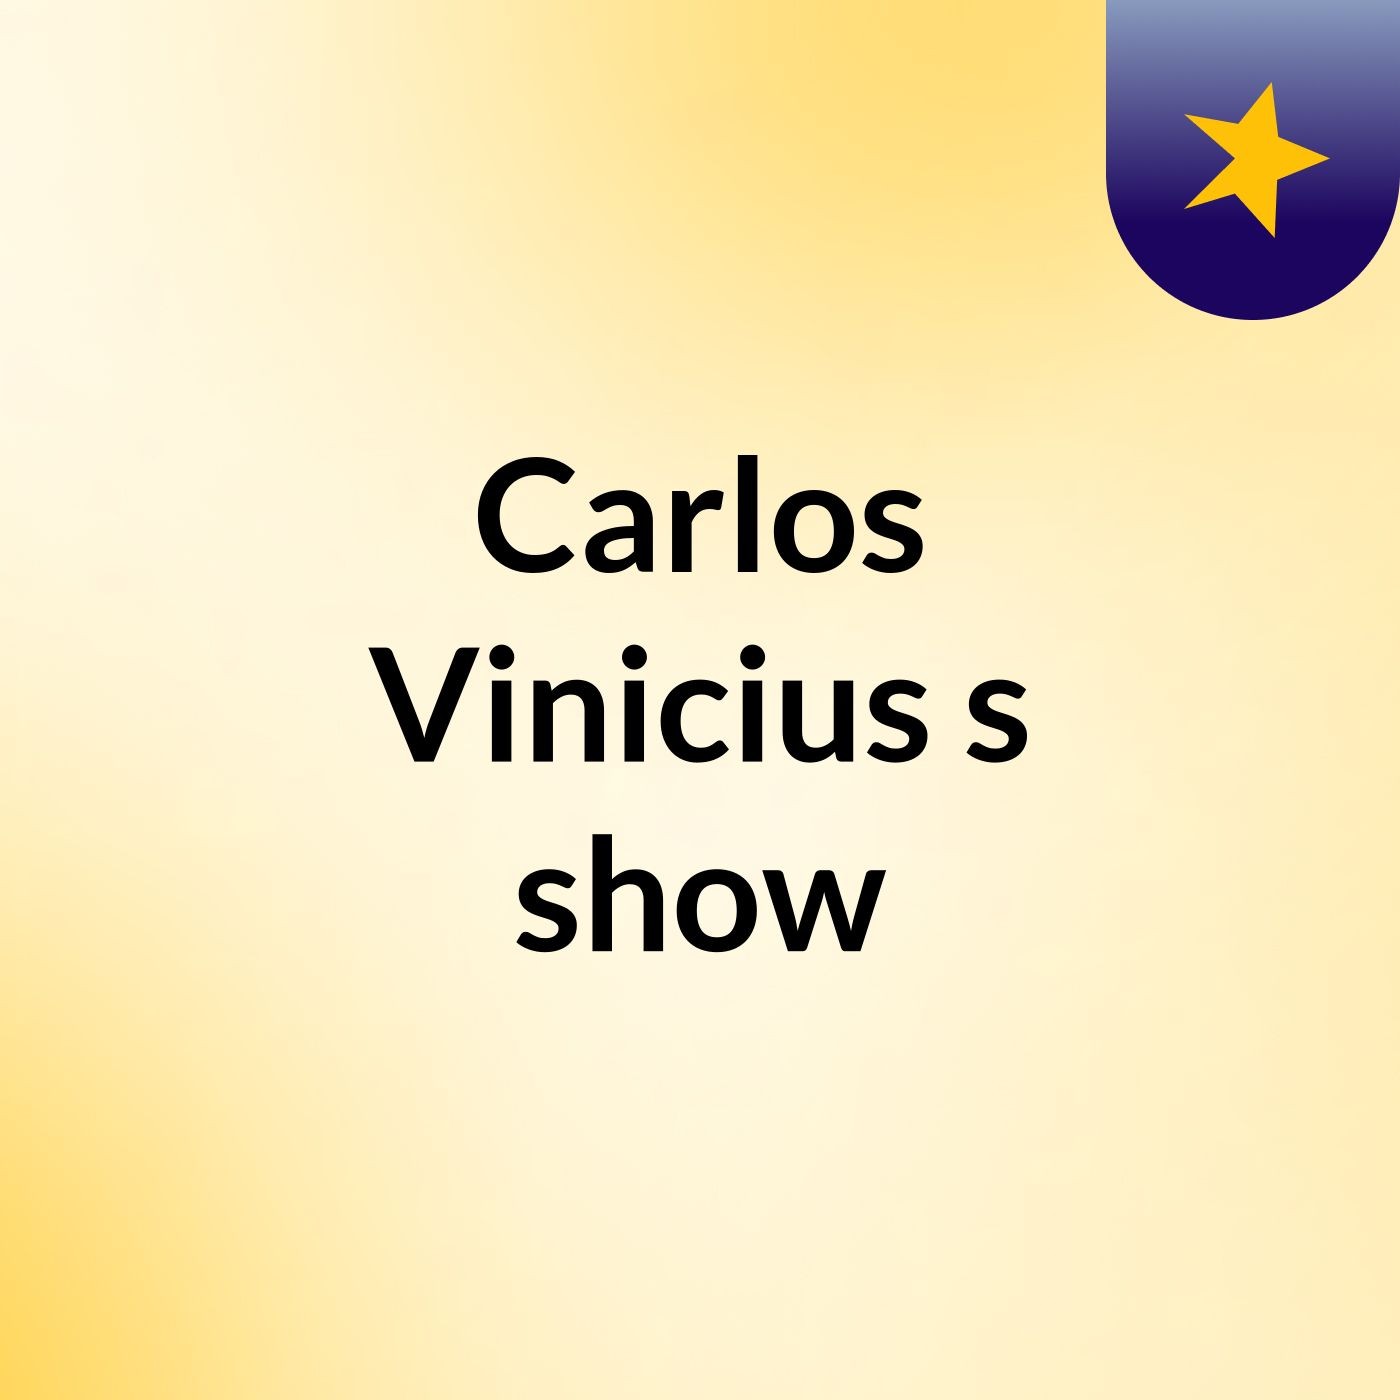 Carlos Vinicius's show